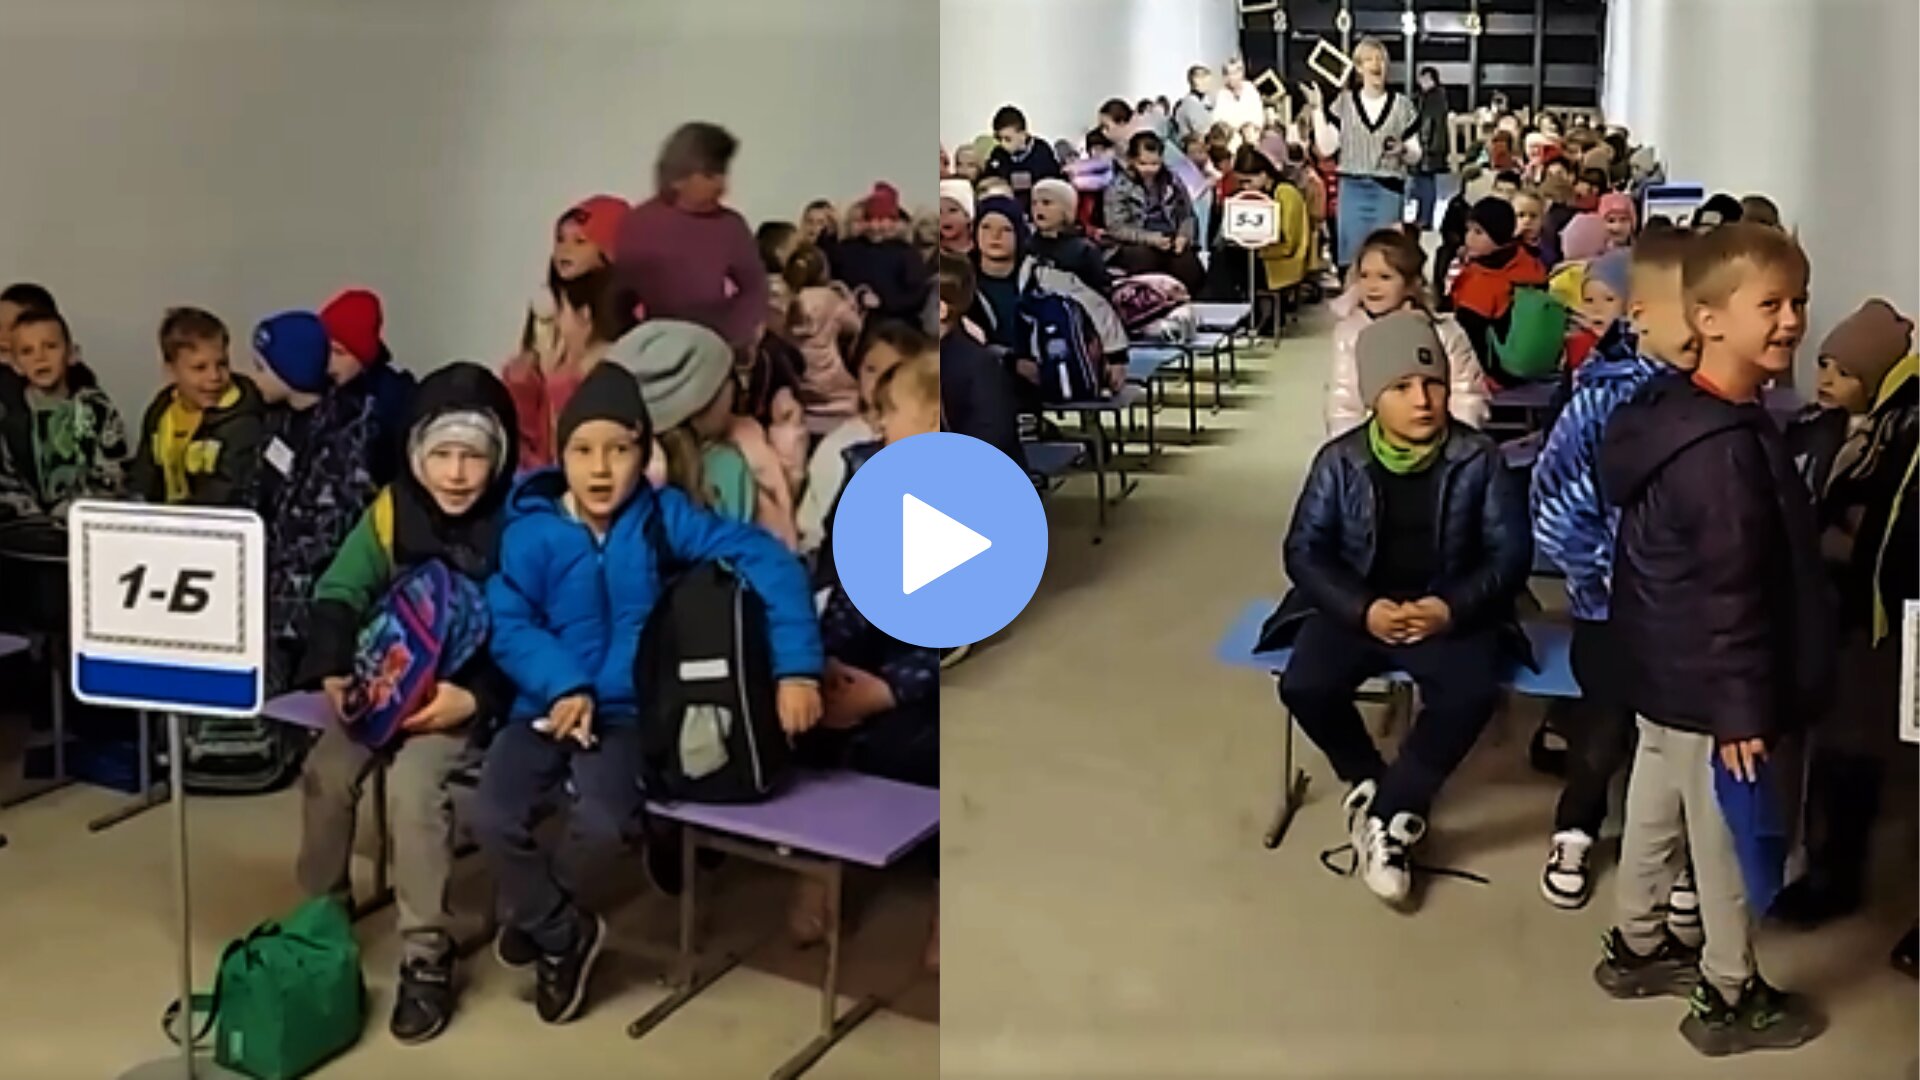 У мережі з'явилось відео, на якому показана атмосфера, яка панує в укритті однієї із столичних шкіл. Діти співають пісні та танцюють під час повітряної тривоги.